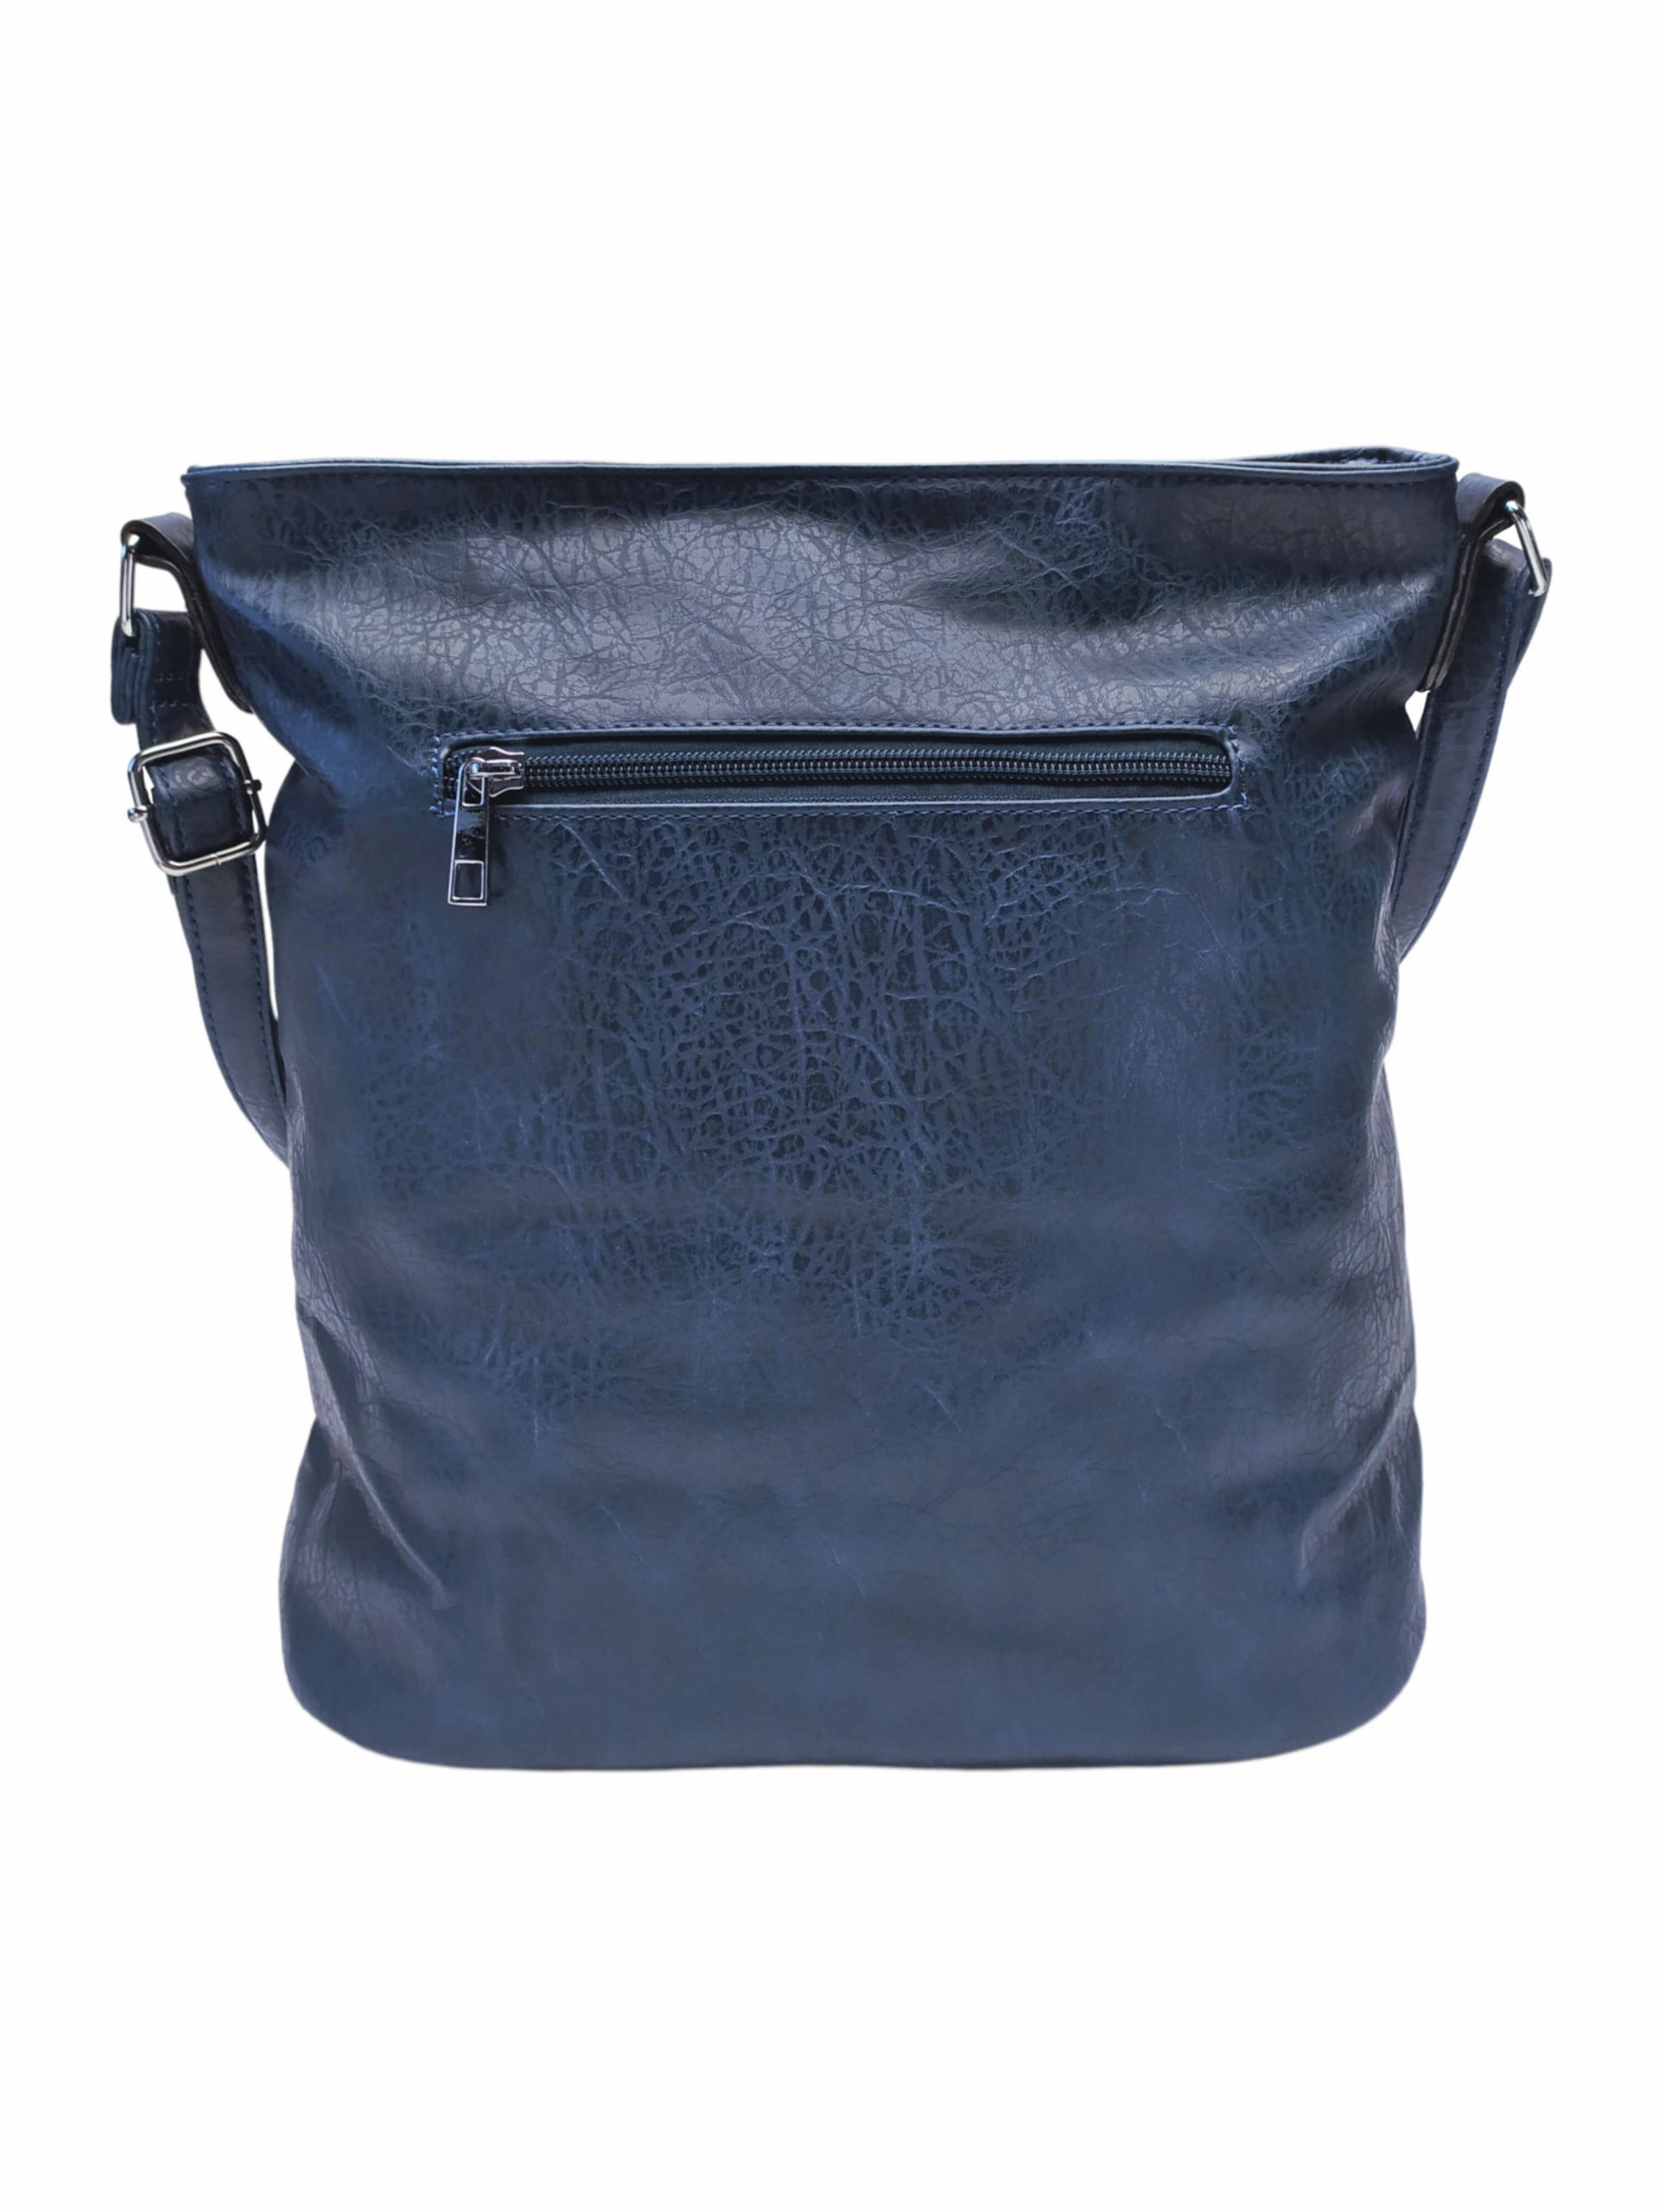 Moderní tmavě modrá crossbody kabelka s kapsami, Rosy Bag, NH8135, zadní strana crossbody kabelky